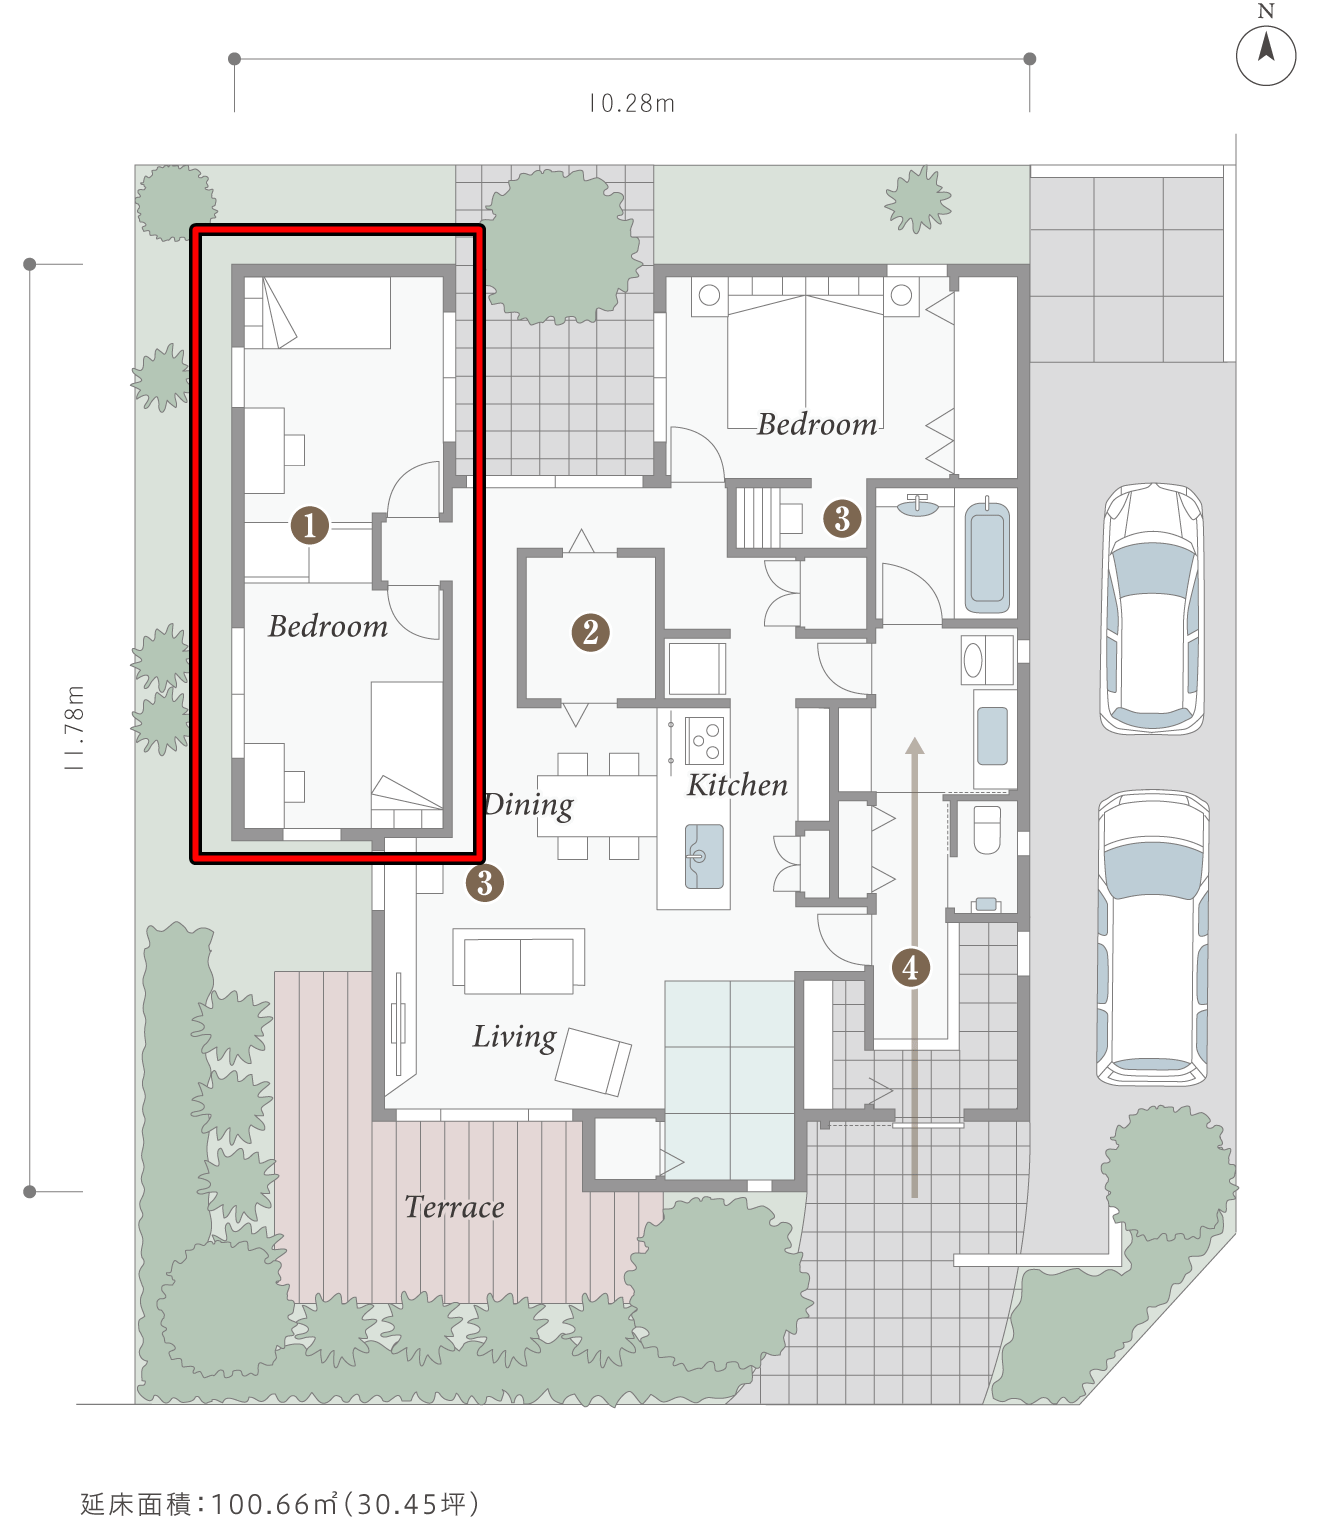 パナソニックホームズさんの平屋「カサートX 平屋LCCMモデル」の可動間仕切収納で間取り変更が容易な子ども部屋